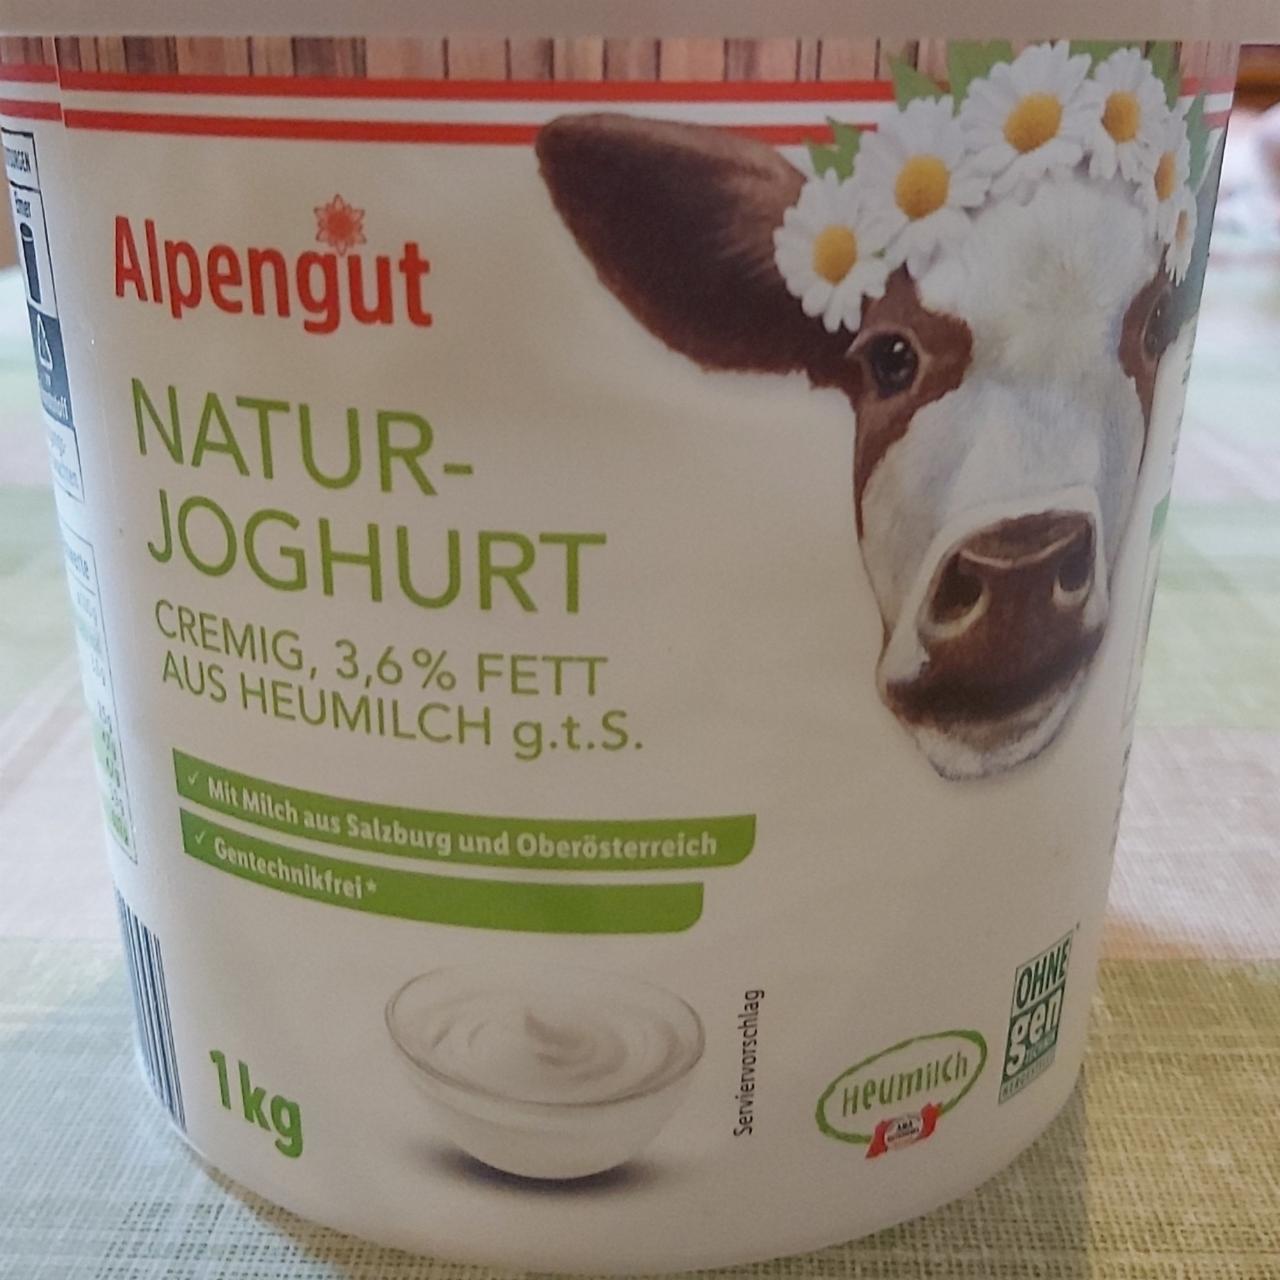 Fotografie - Natur-Joghurt 3,6 % Fett Alpengut